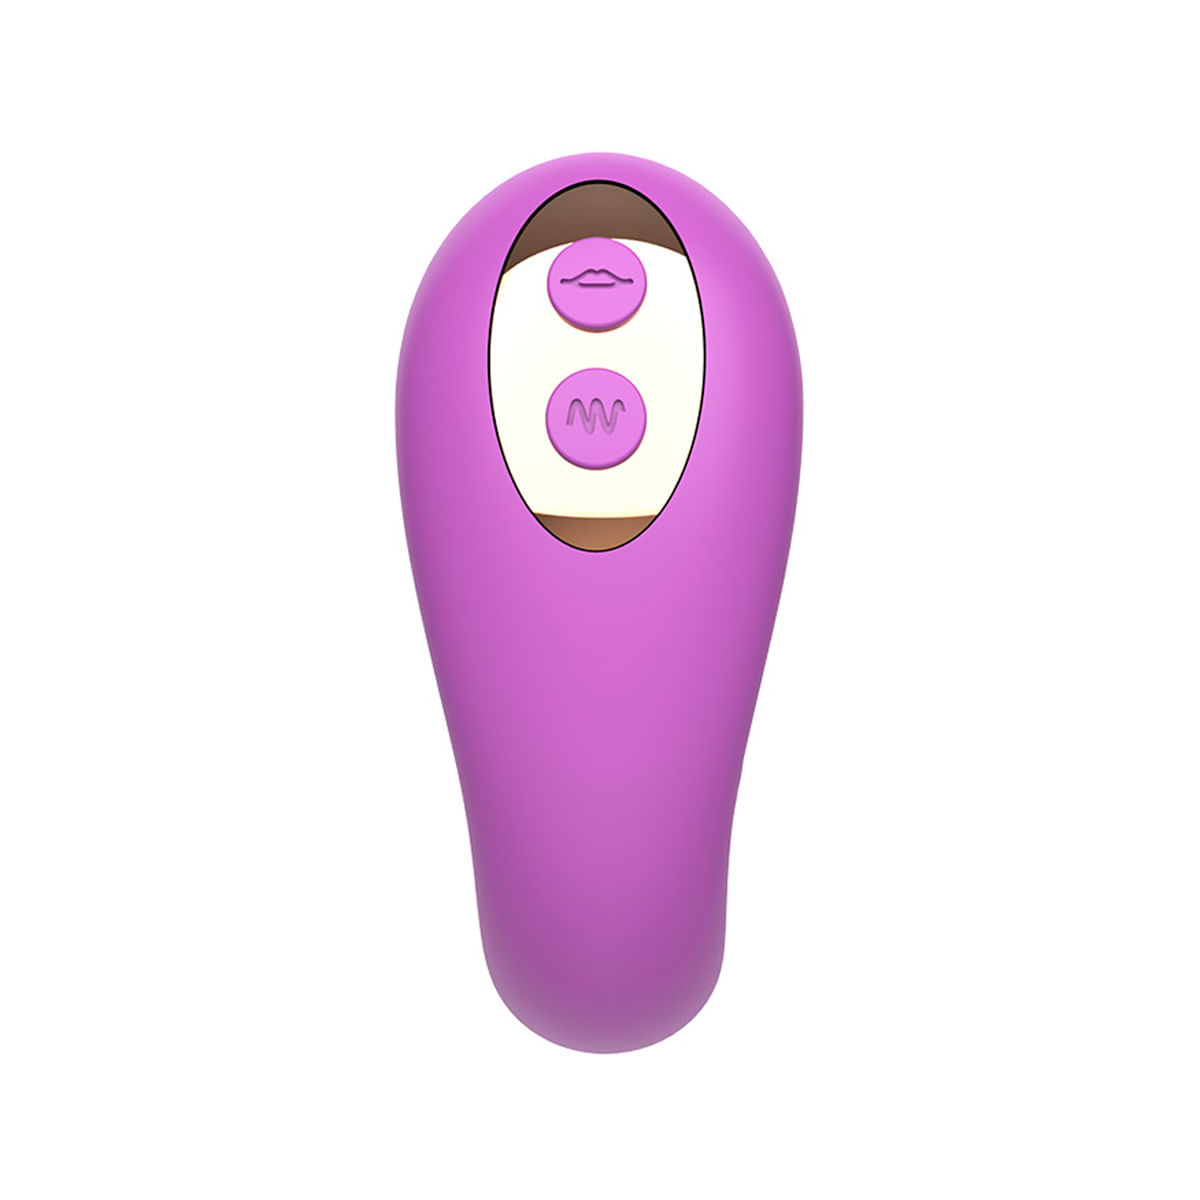 Flexible Sucking Estimulador Clitóriano e Ponto G com 7 Modos de Vibração e Pulsação Vip Mix